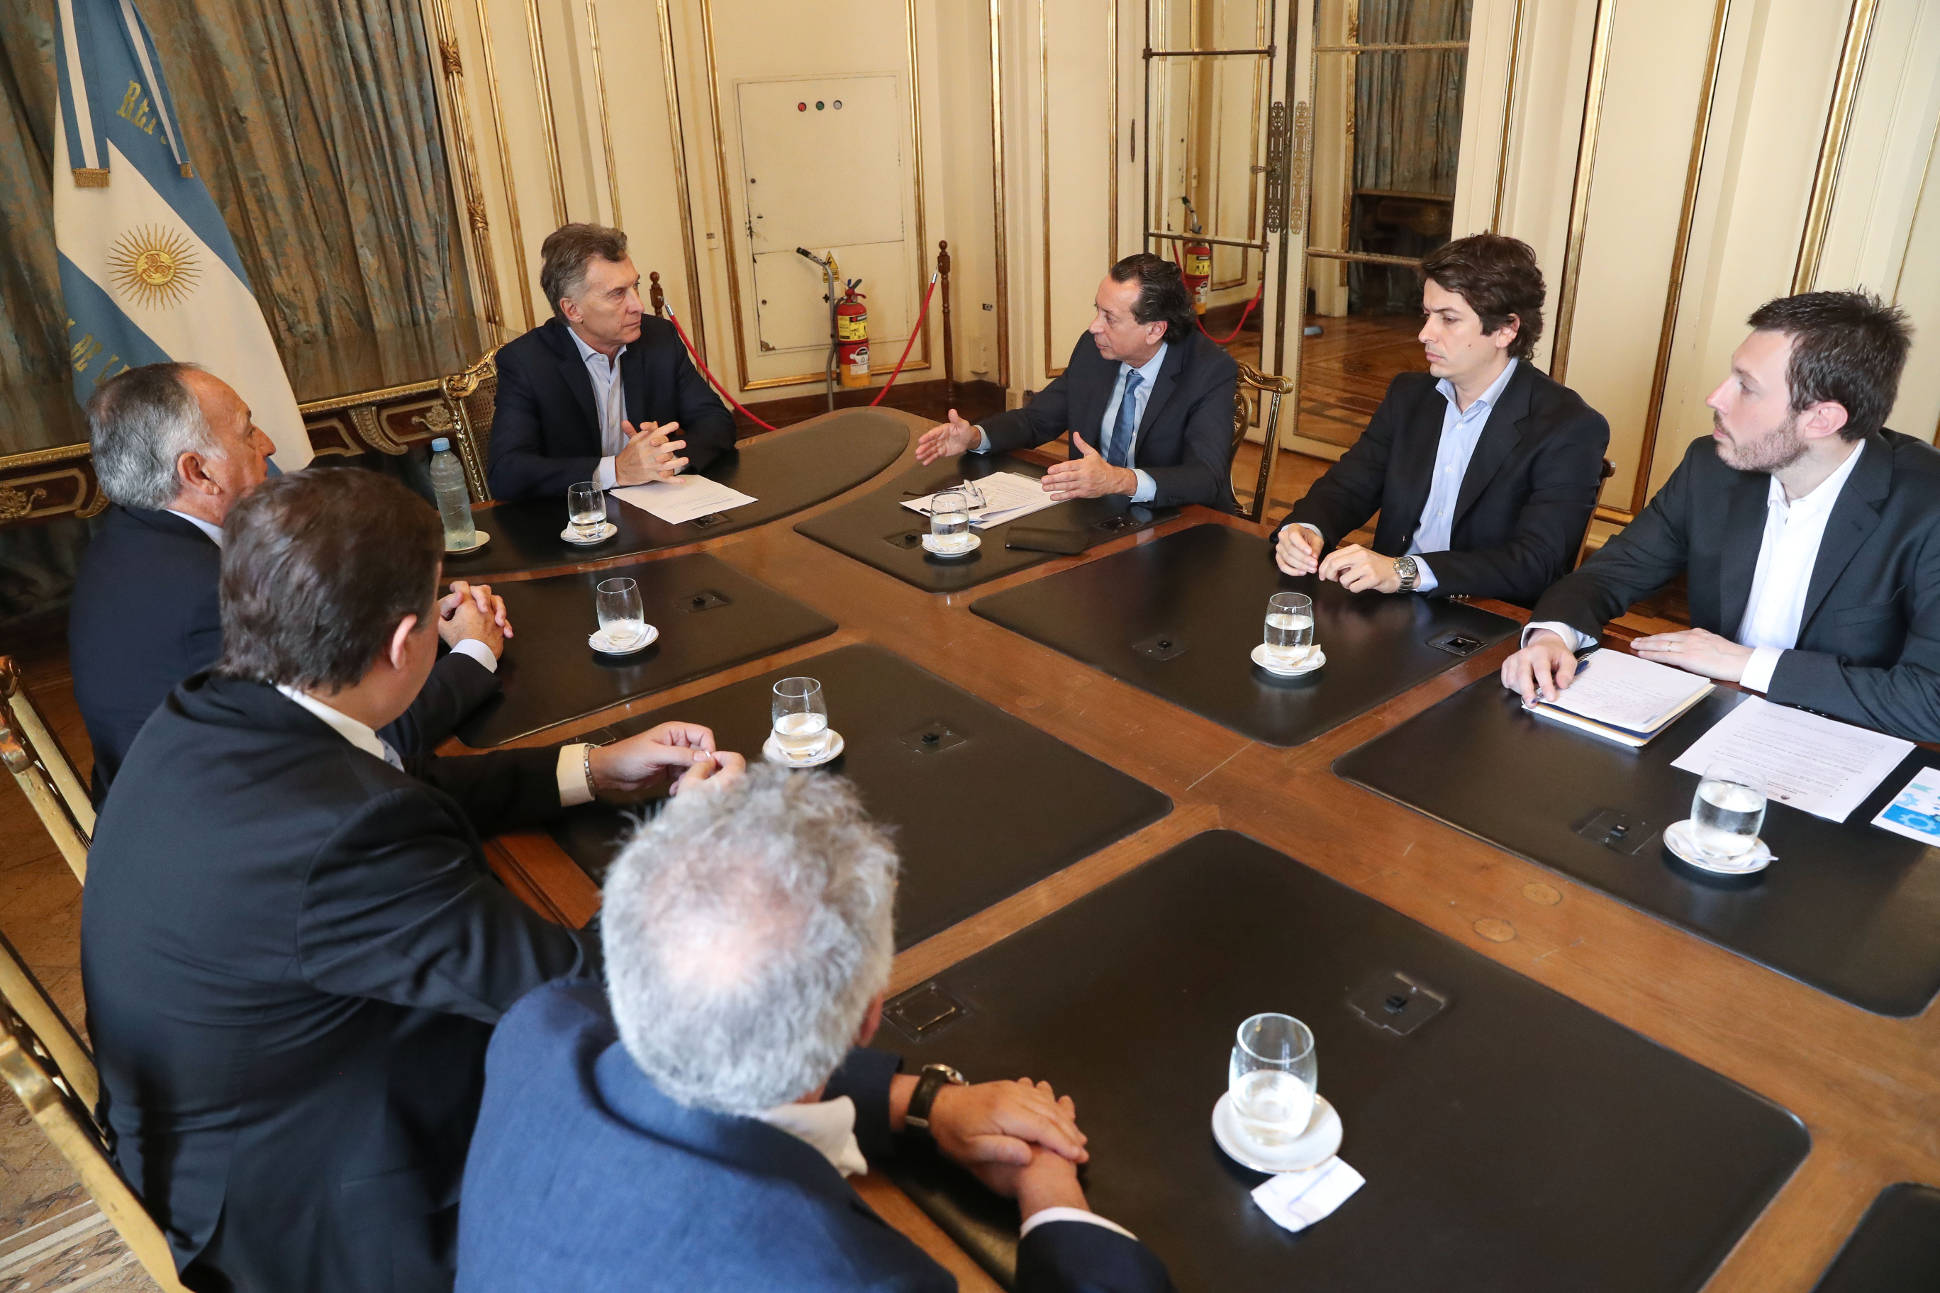 El presidente Macri anunció beneficios para los sectores textil, calzado y marroquinería